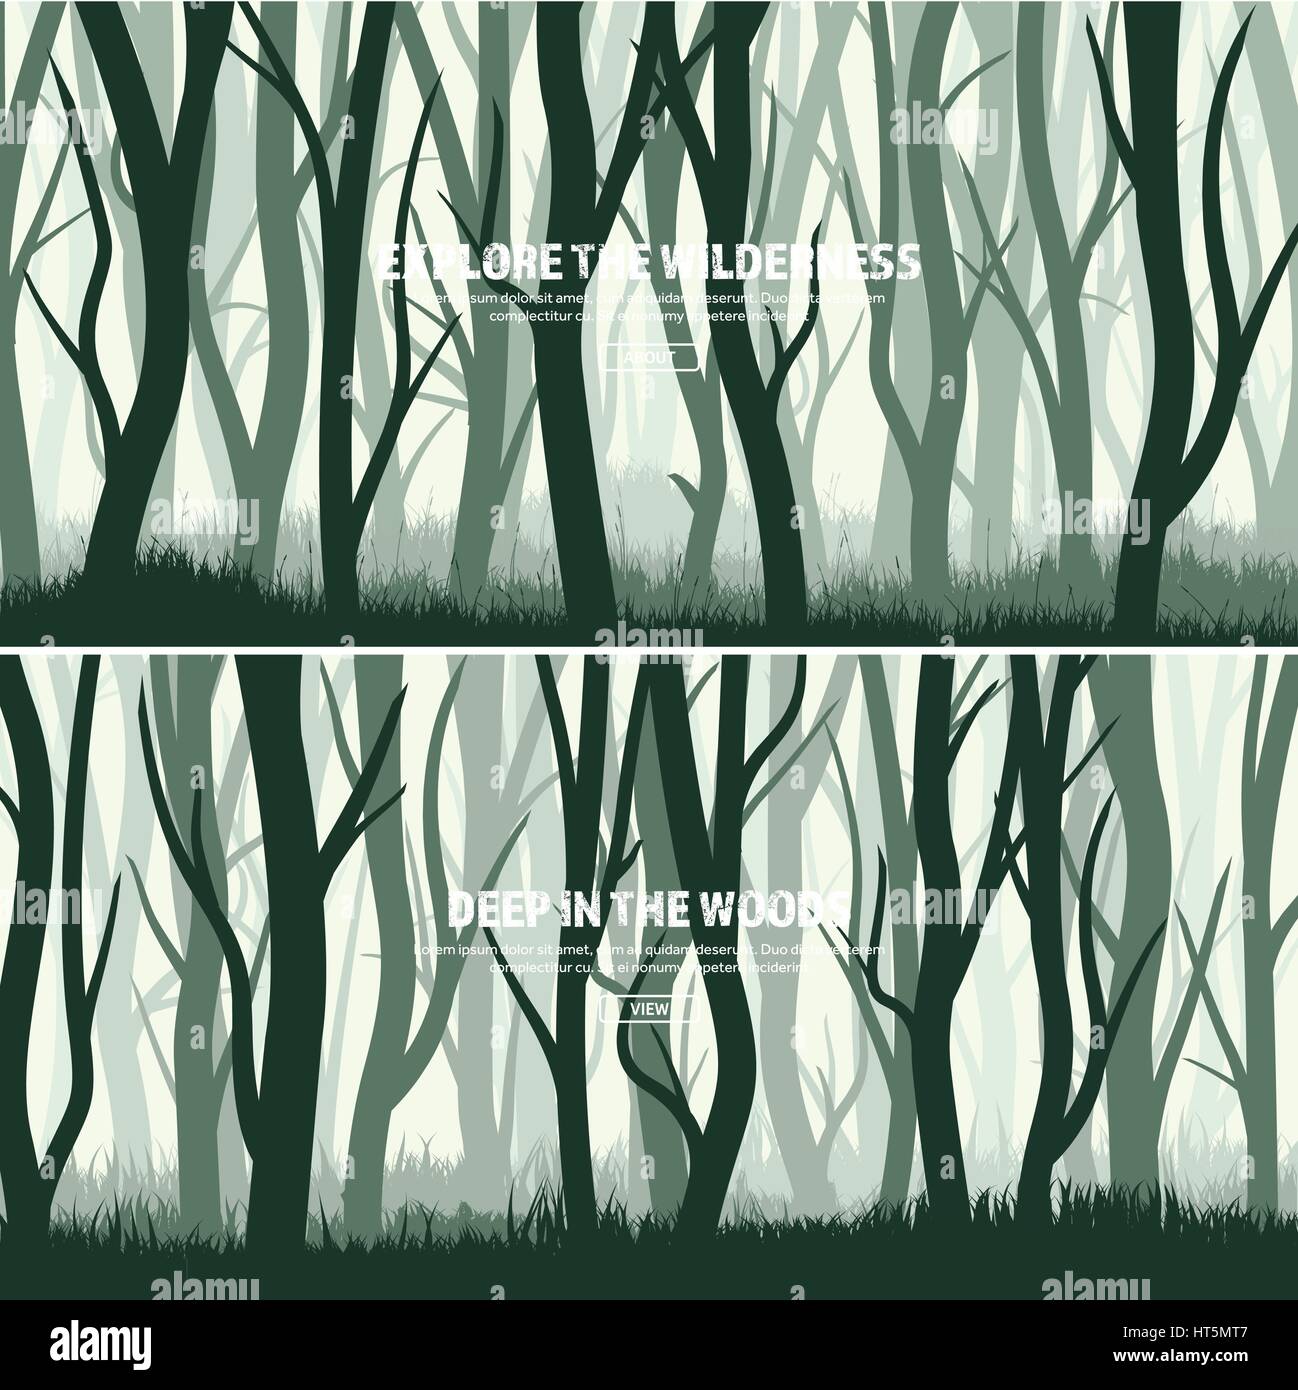 Bäume gesetzt. Wilde Wald, Natur Hintergrund. Wood.Vector Abbildung. Banner. Dunkel grünen Baum. Landscape.Grass,meadow. Stock Vektor